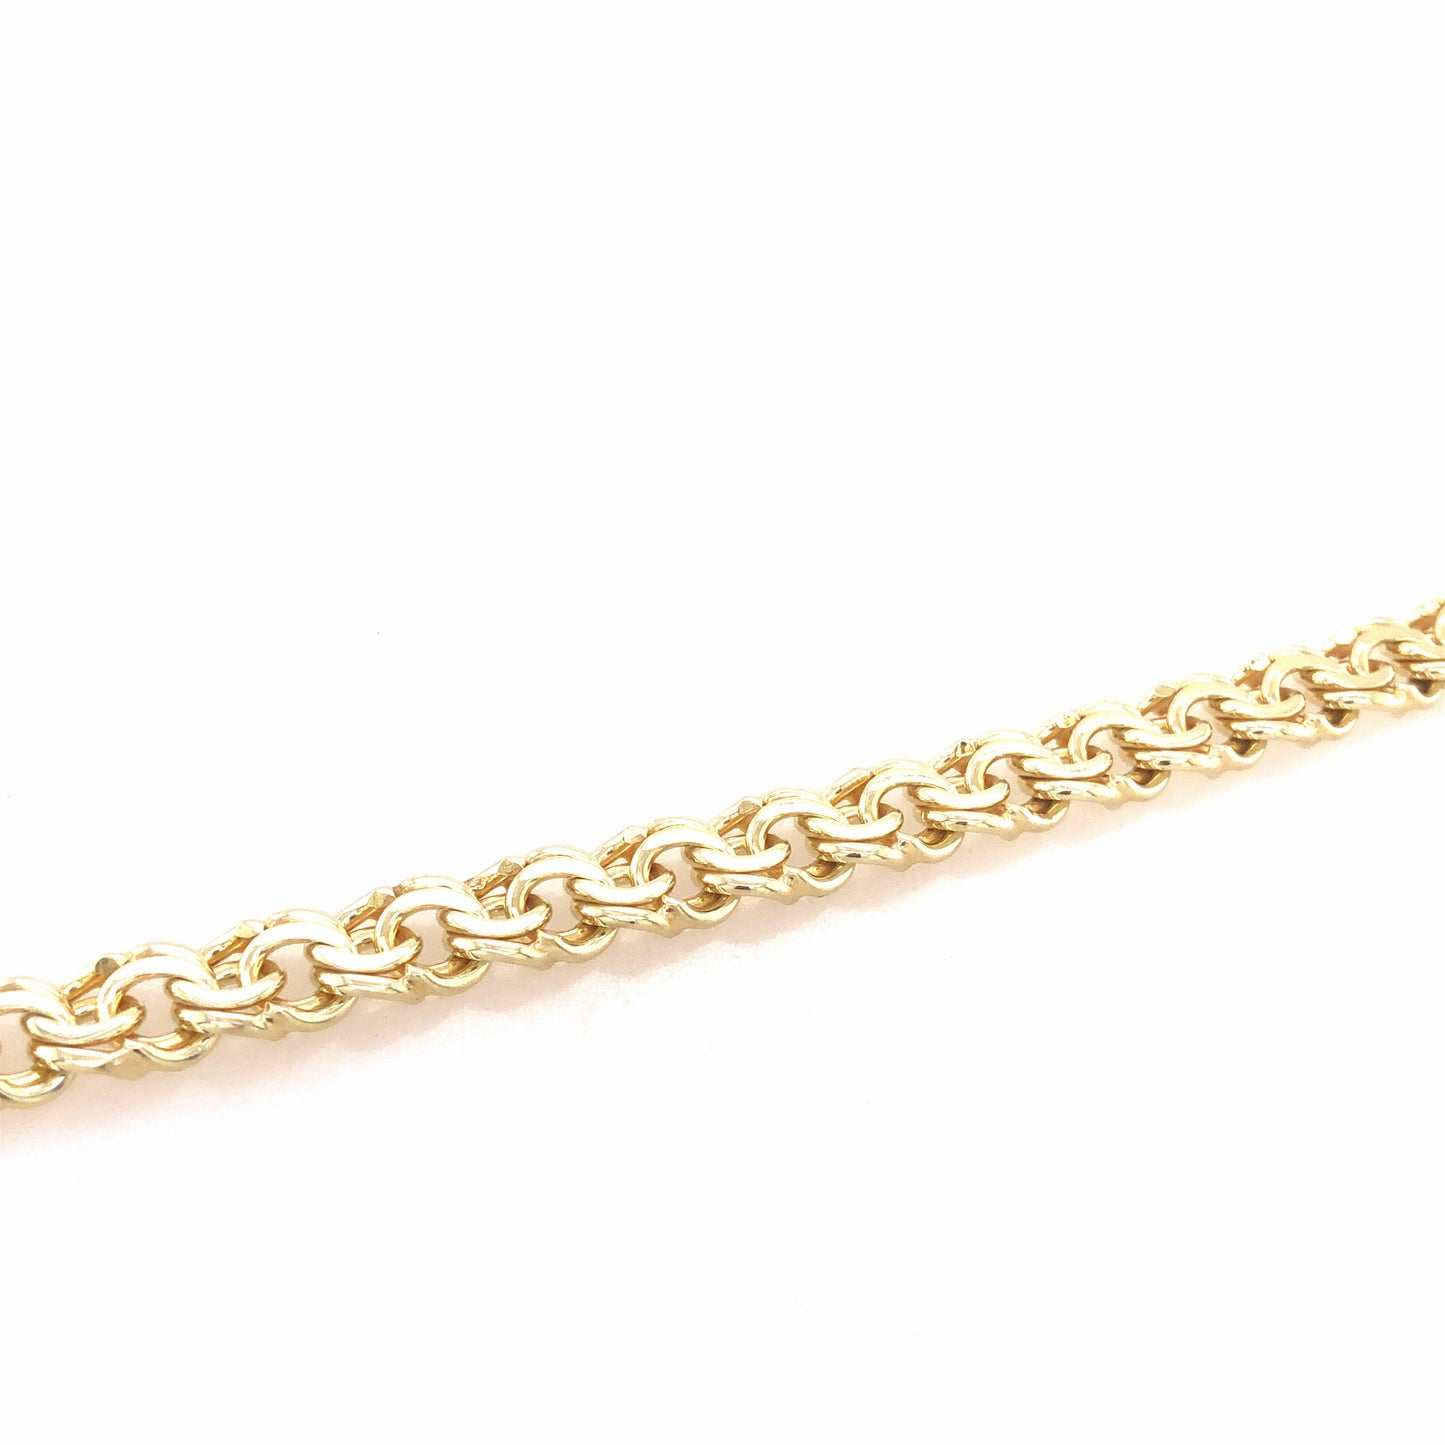 Armband Gold 585 / 14k, extravagant